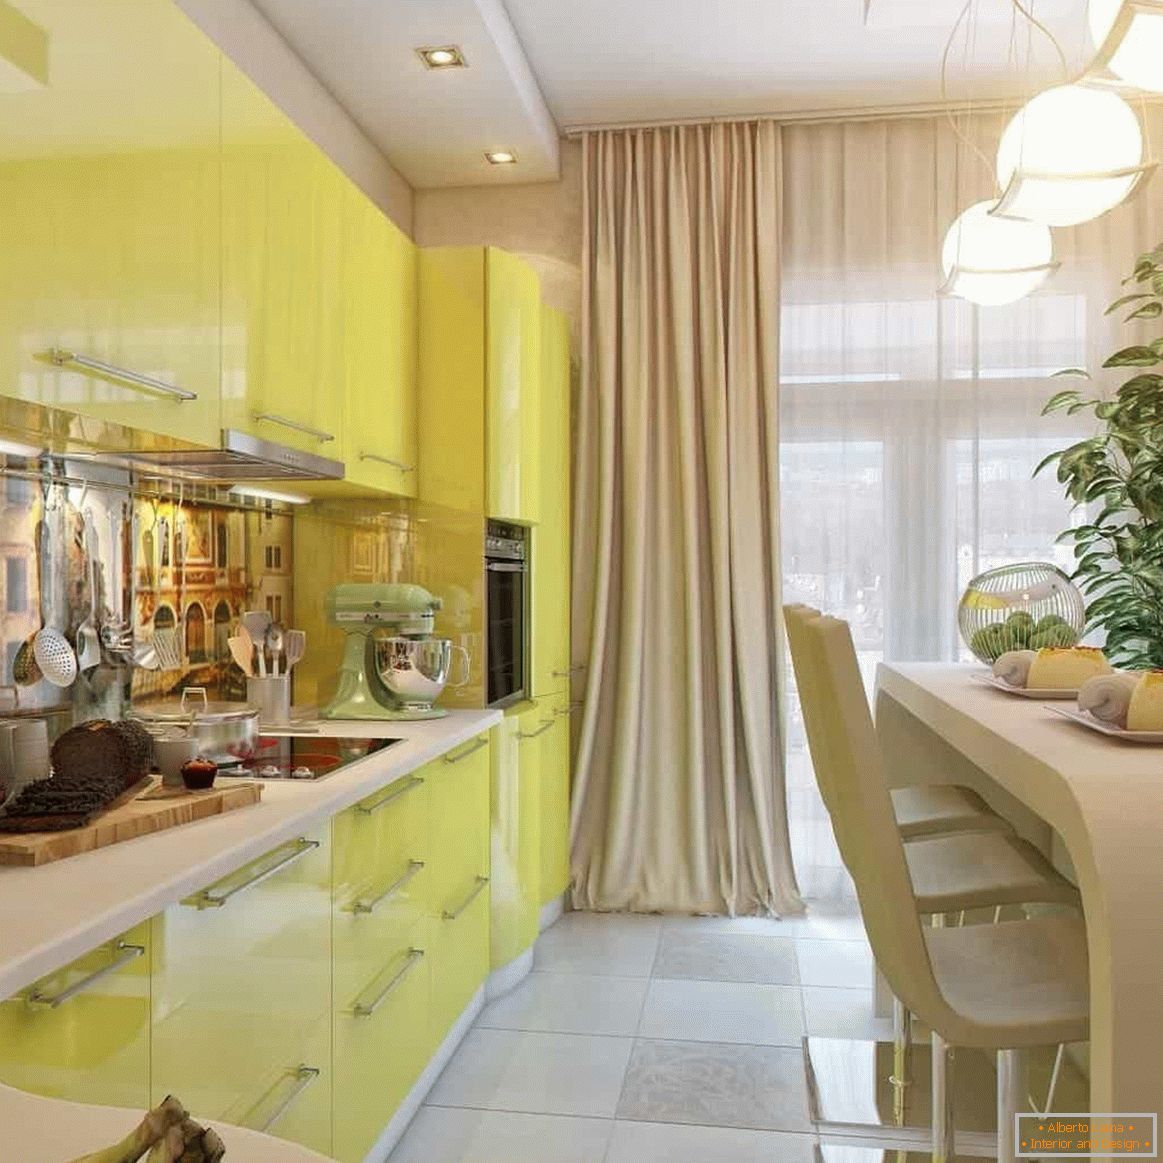 Ecke streckte gelbe Küche mit ursprünglicher Tabelle aus